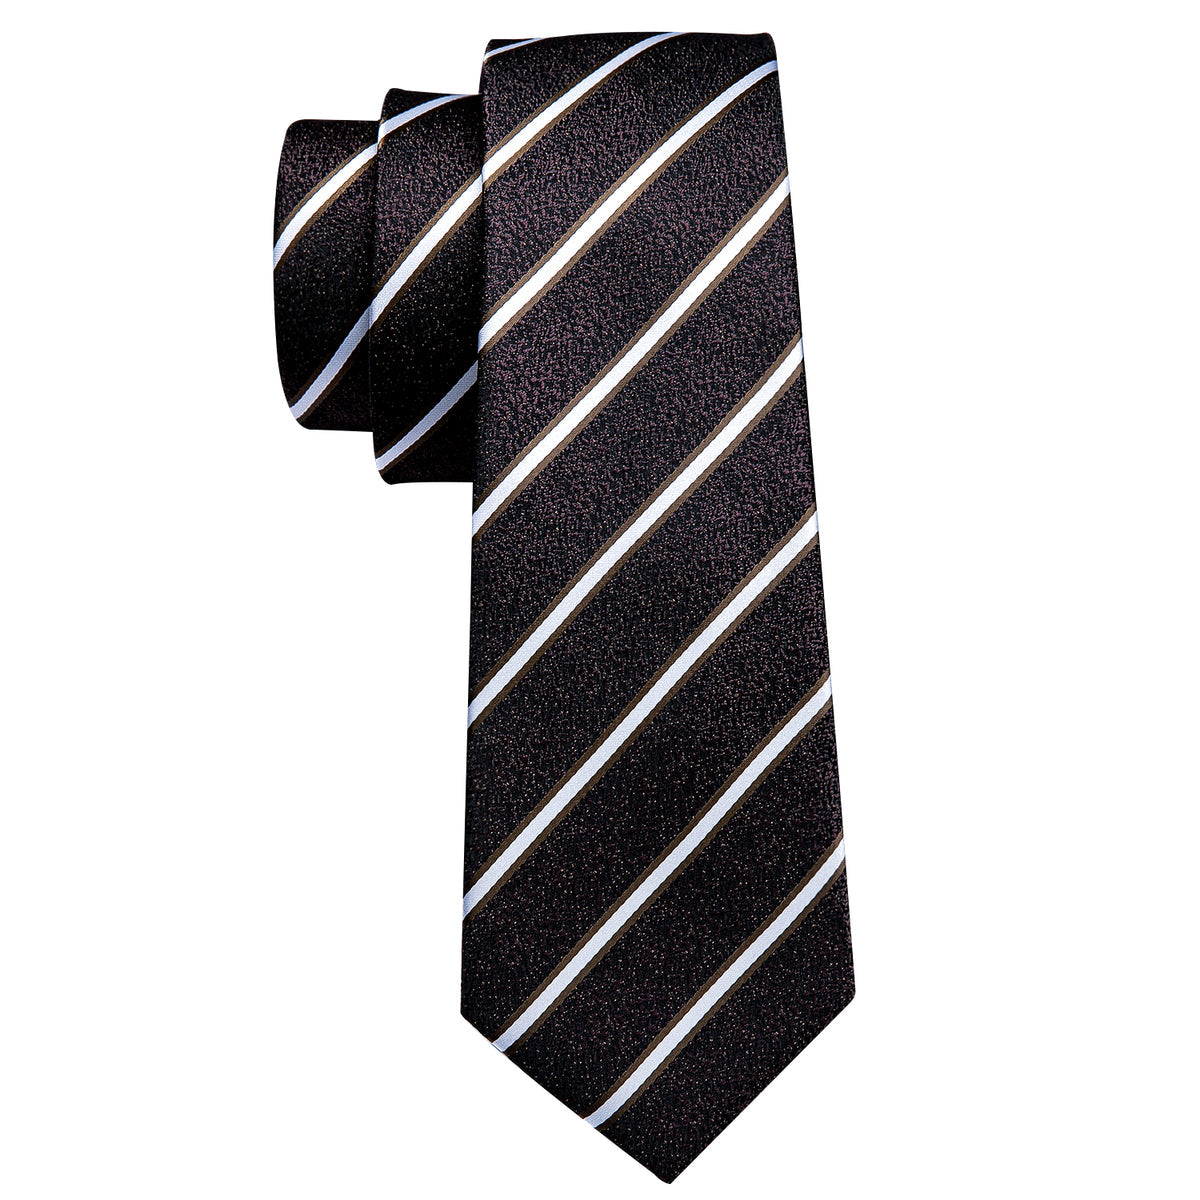 Men’s Silk Coordinated Tie Set - Black White Striped (5301)